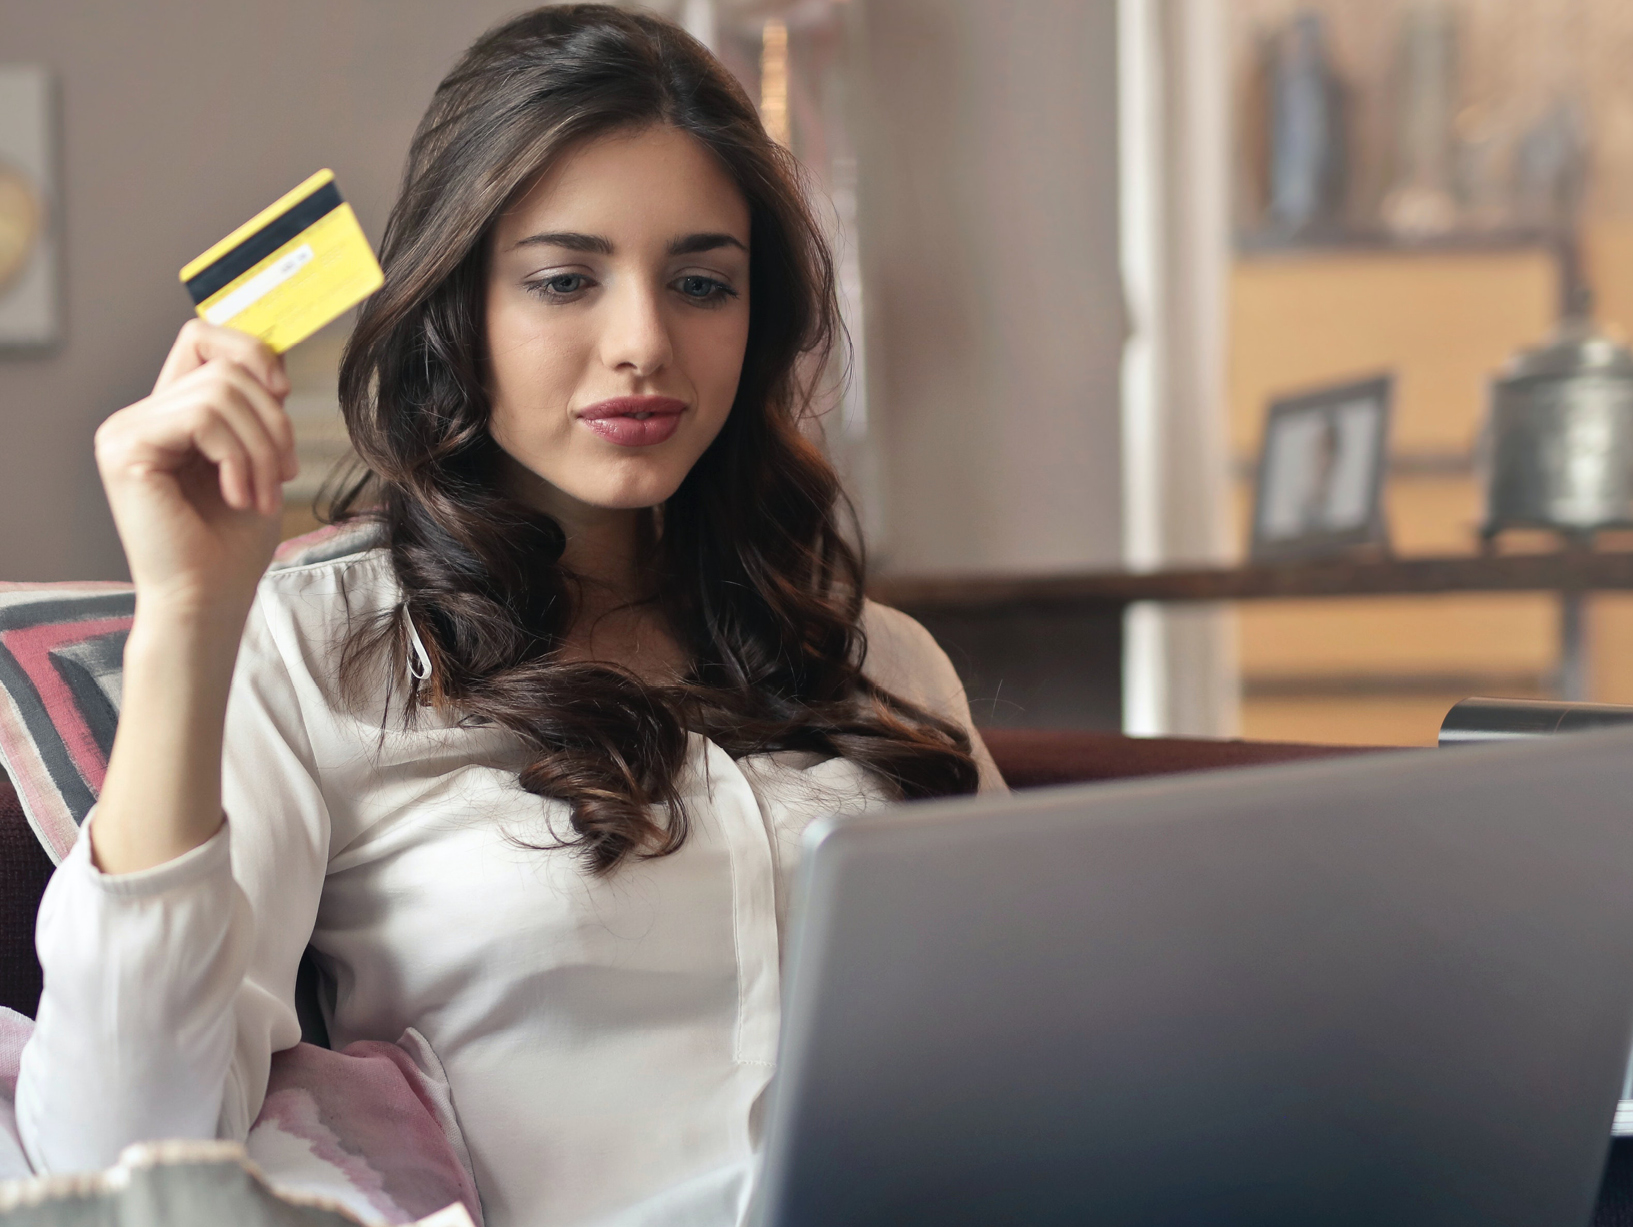 woman using credit card at computer